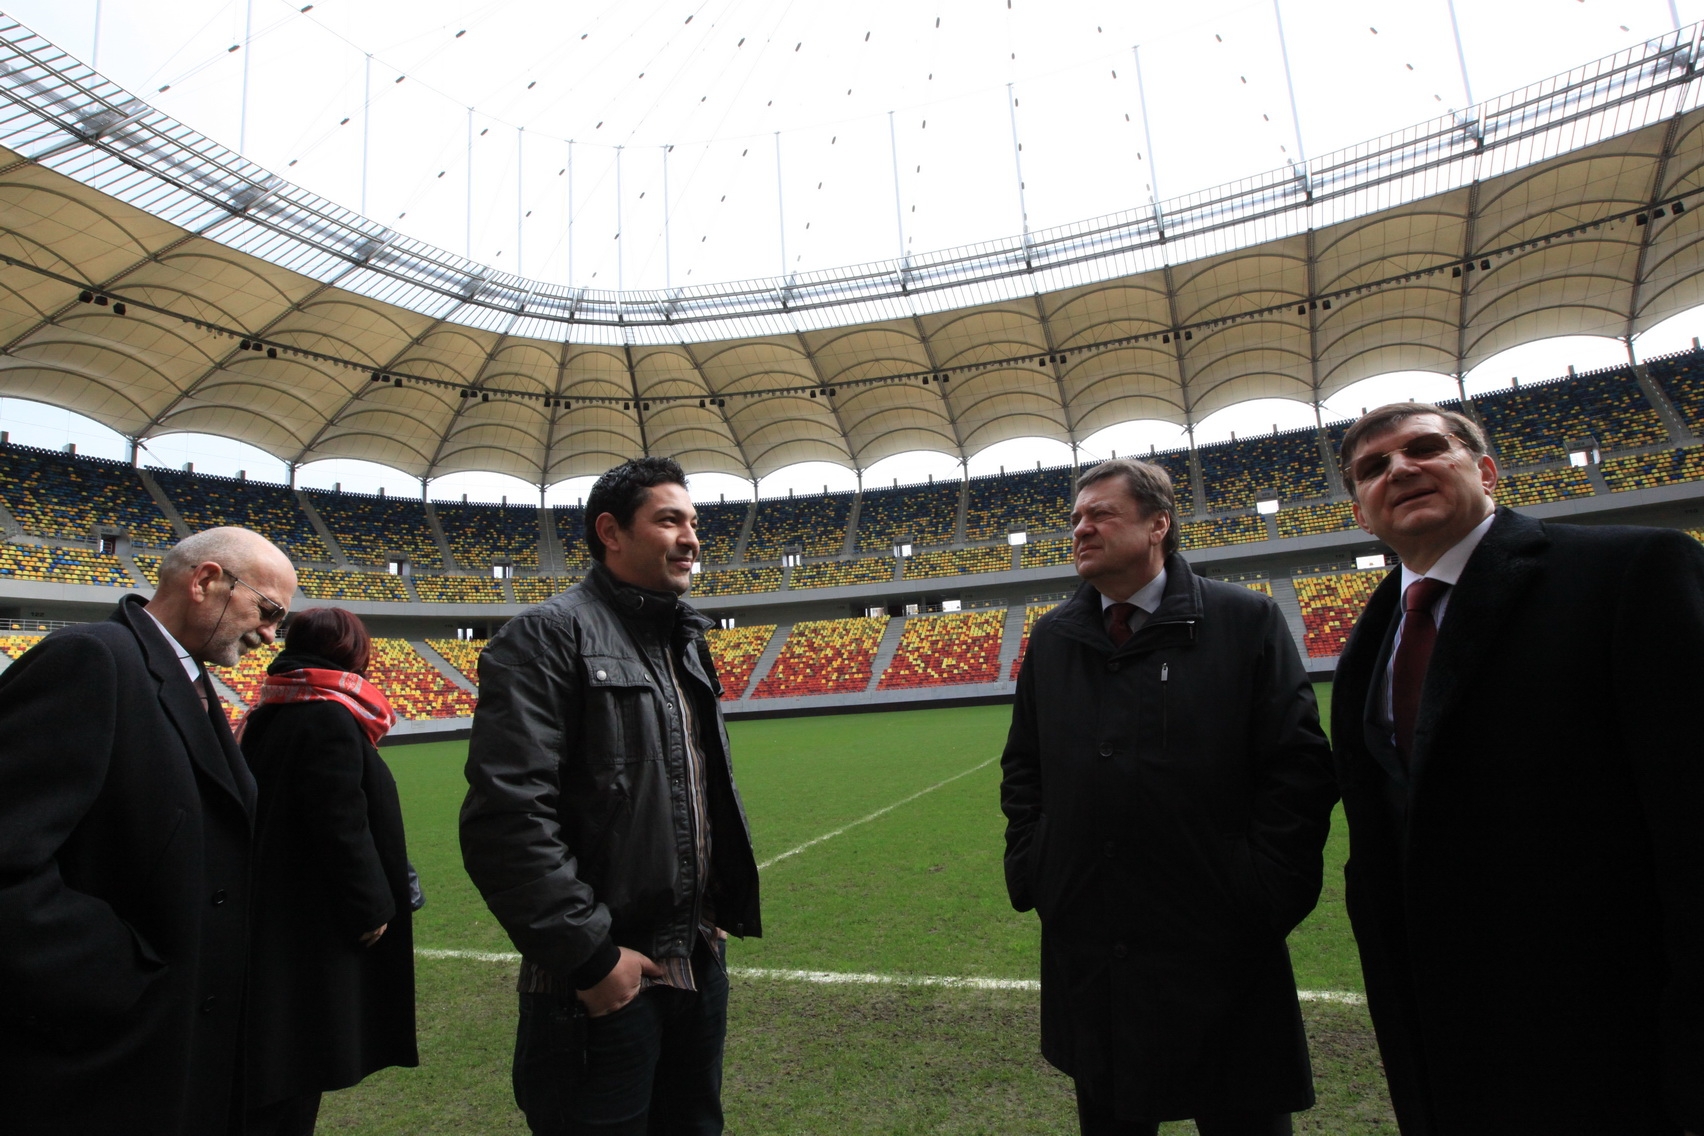 Uimit. Zoran Jankovic, primarul din Ljubljana, s-a declarat impresionat de stadionul Arena Nationala